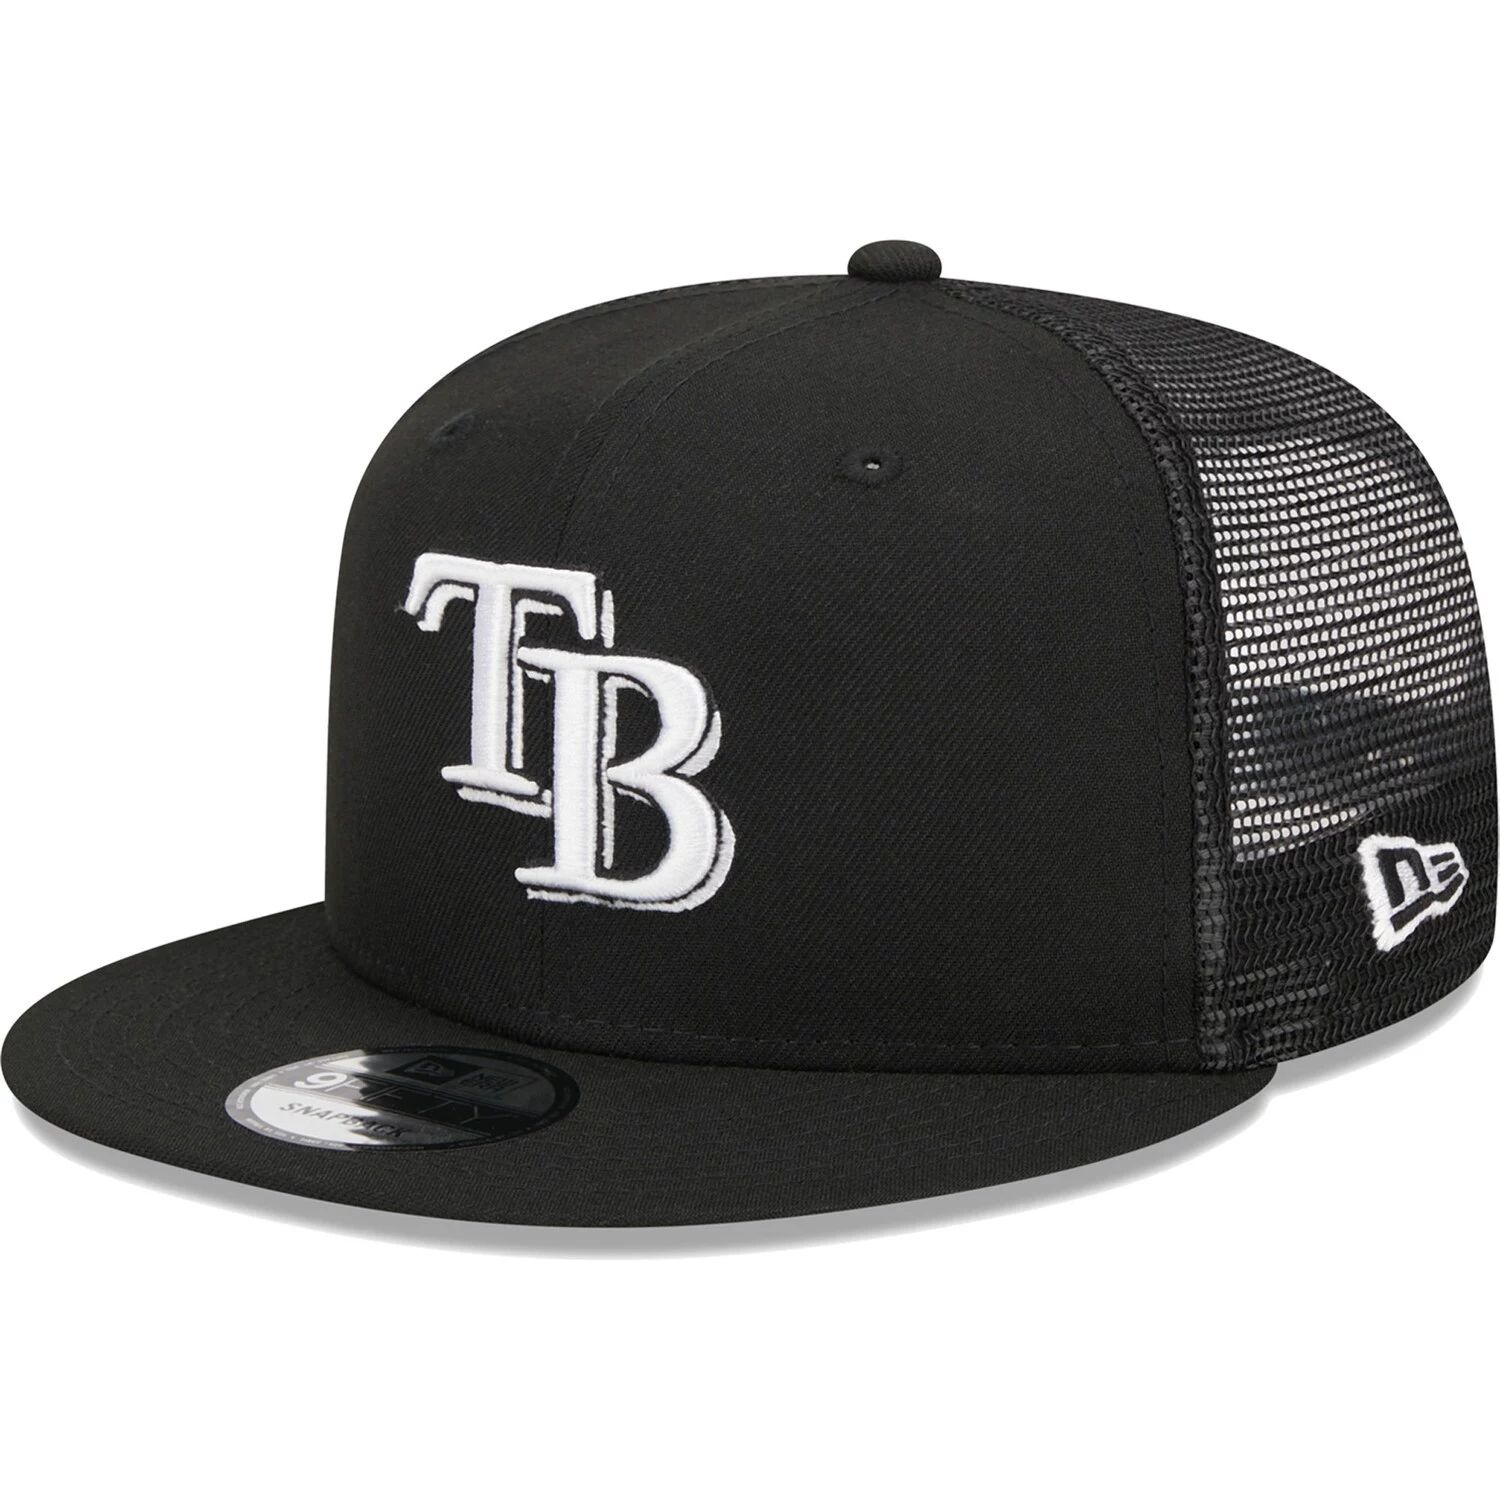 Мужская черная кепка New Era Tampa Bay Rays Trucker 9FIFTY Snapback